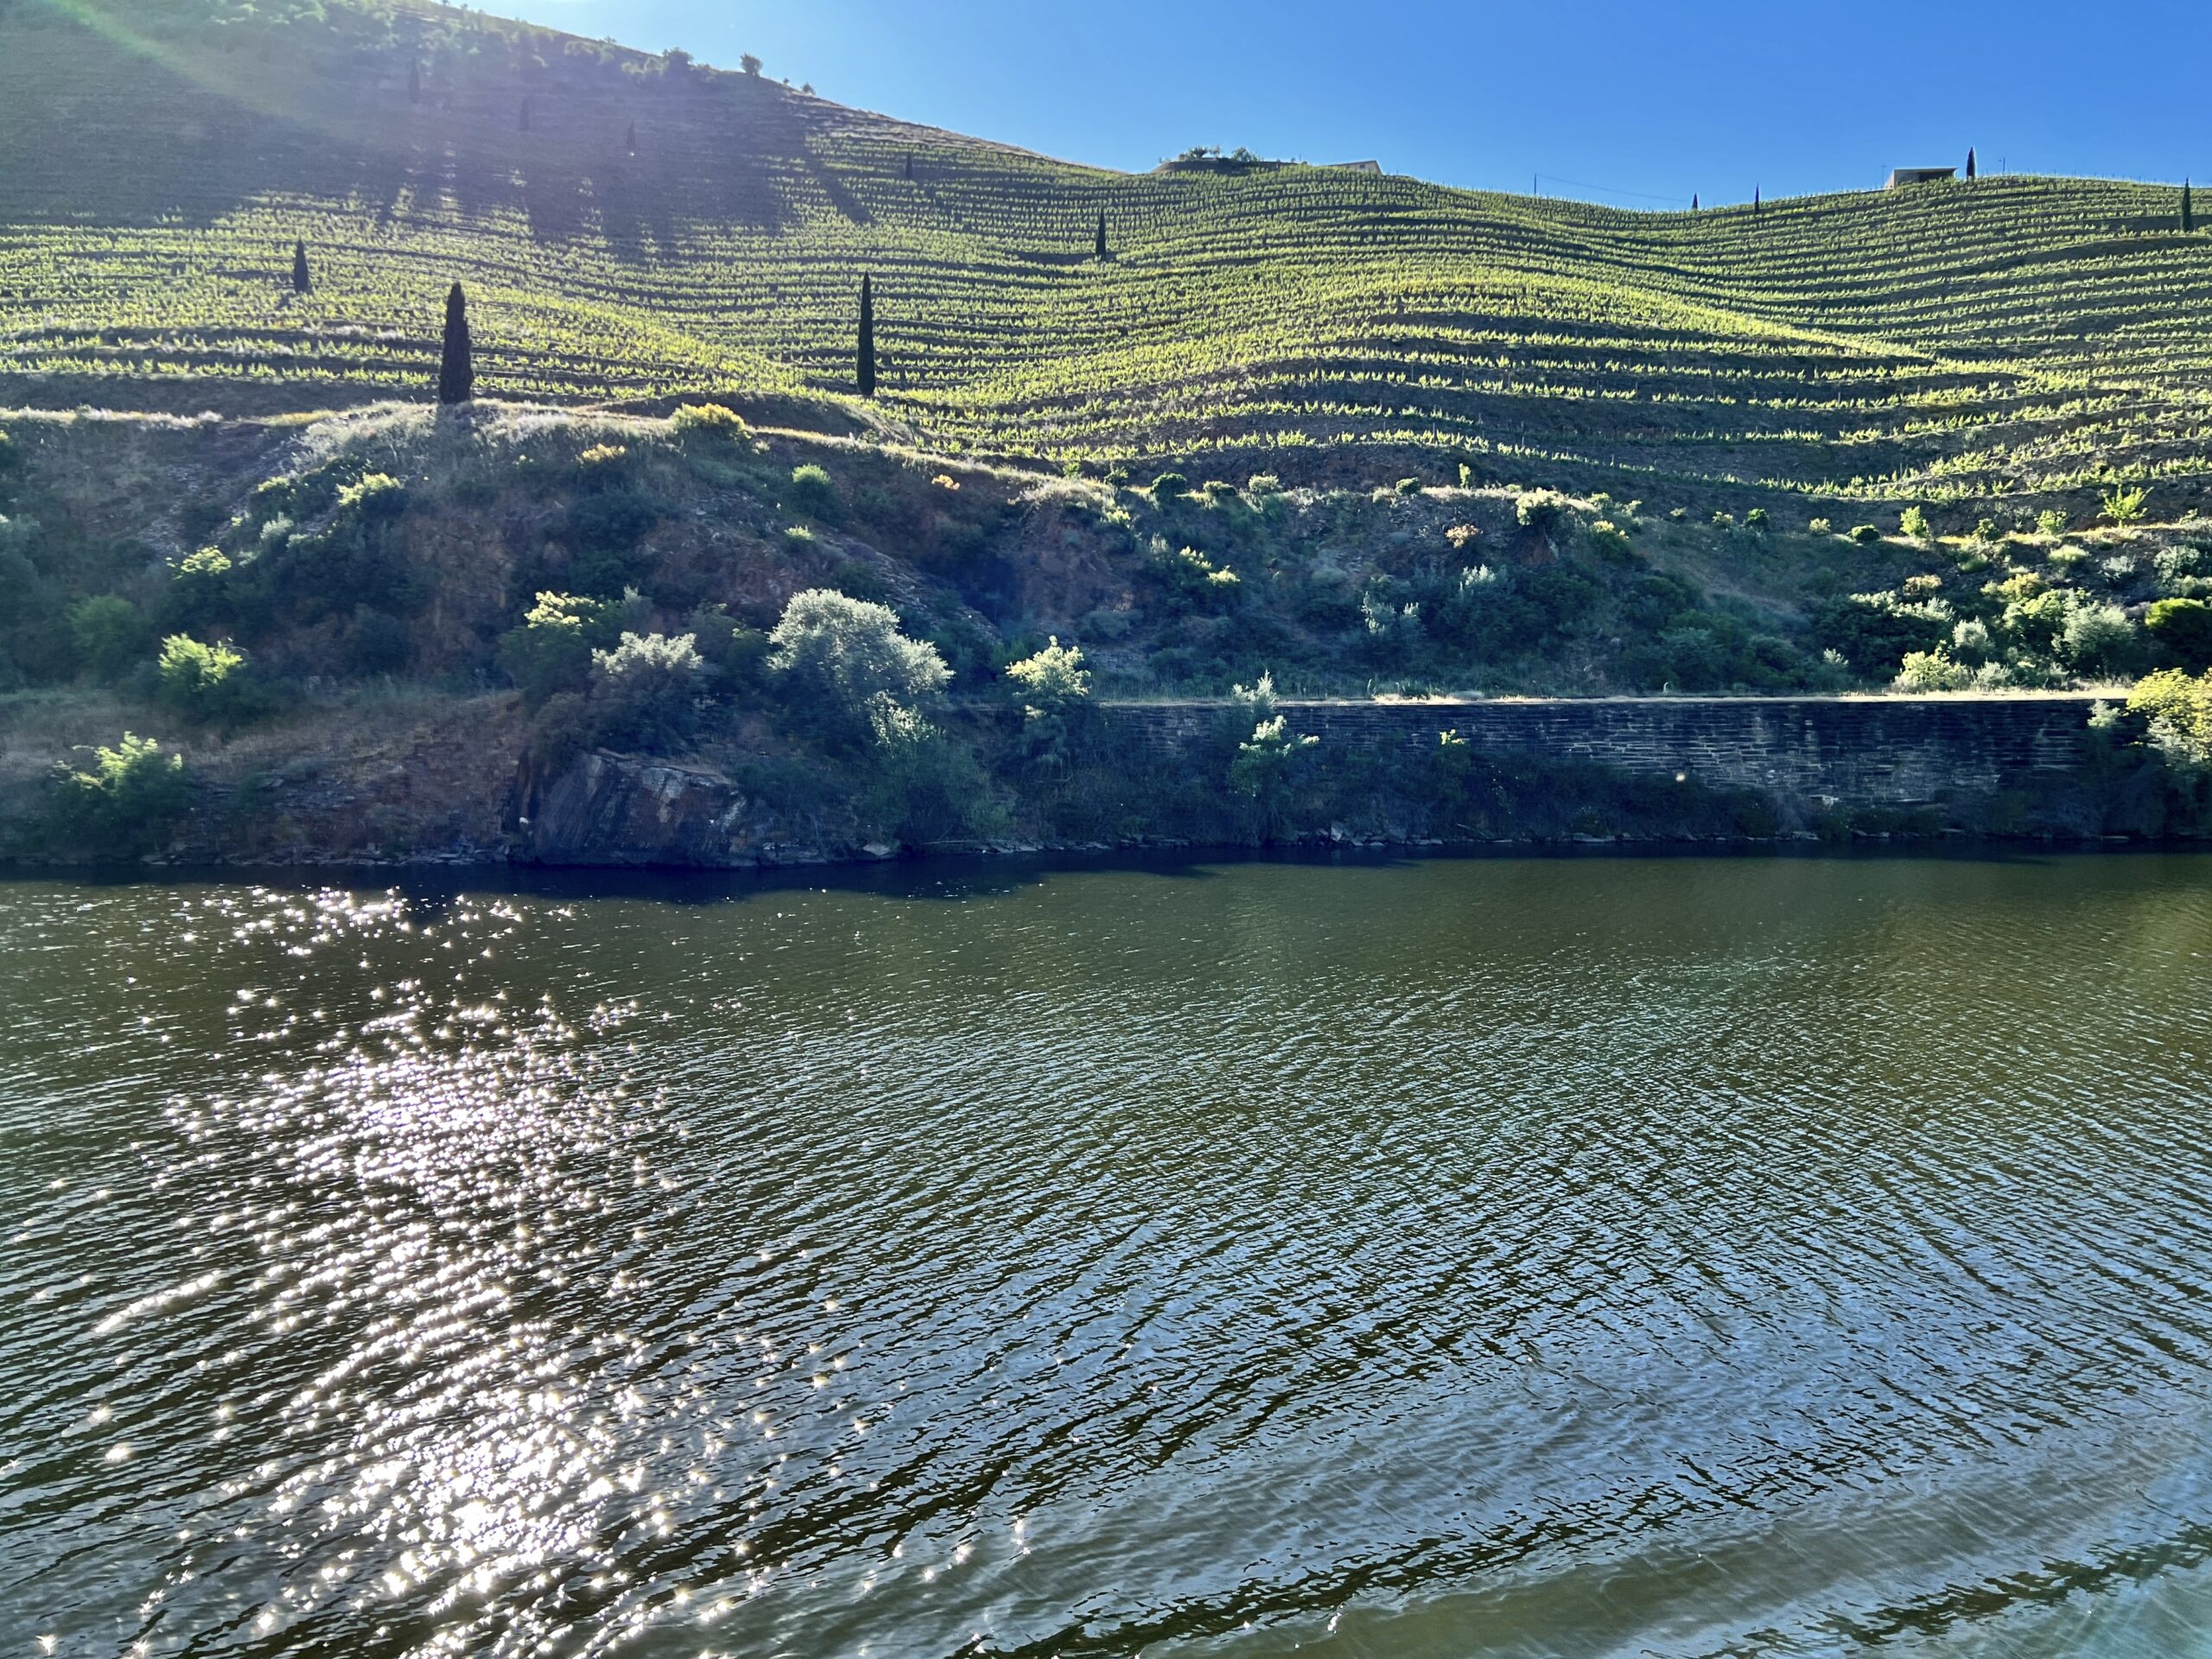 Terraces along the Douro river